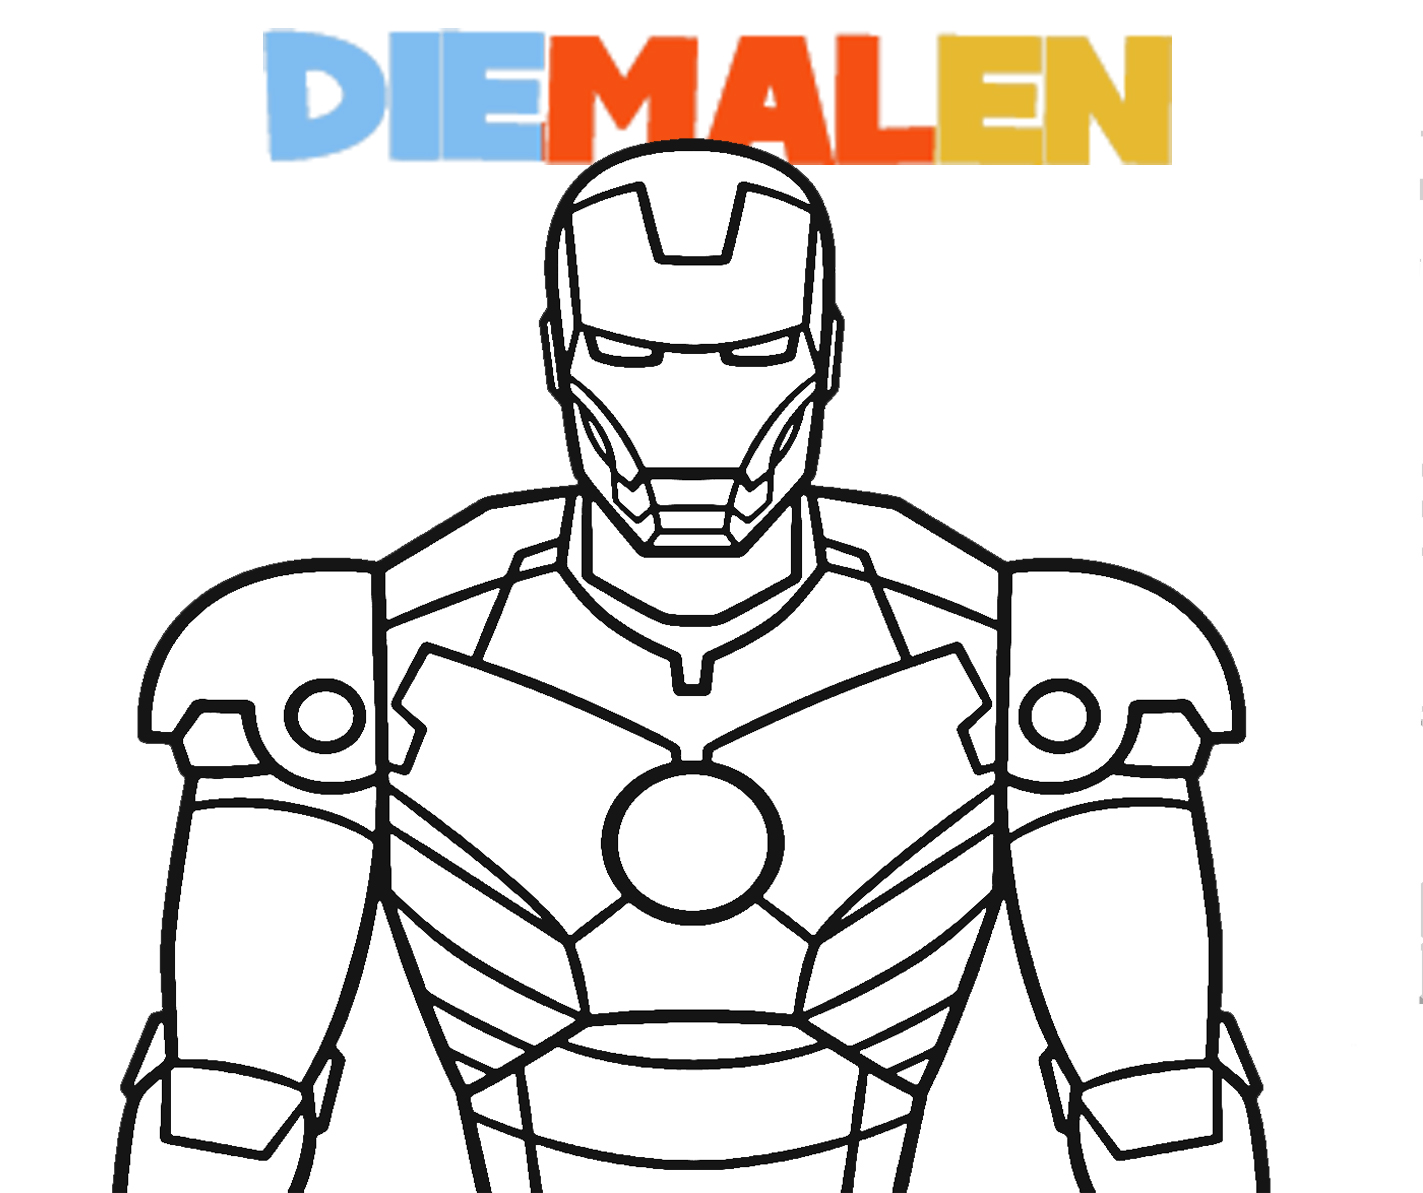 Iron Man Ausmalbilder zum Ausdrucken Kostenlos → DieMalen.com